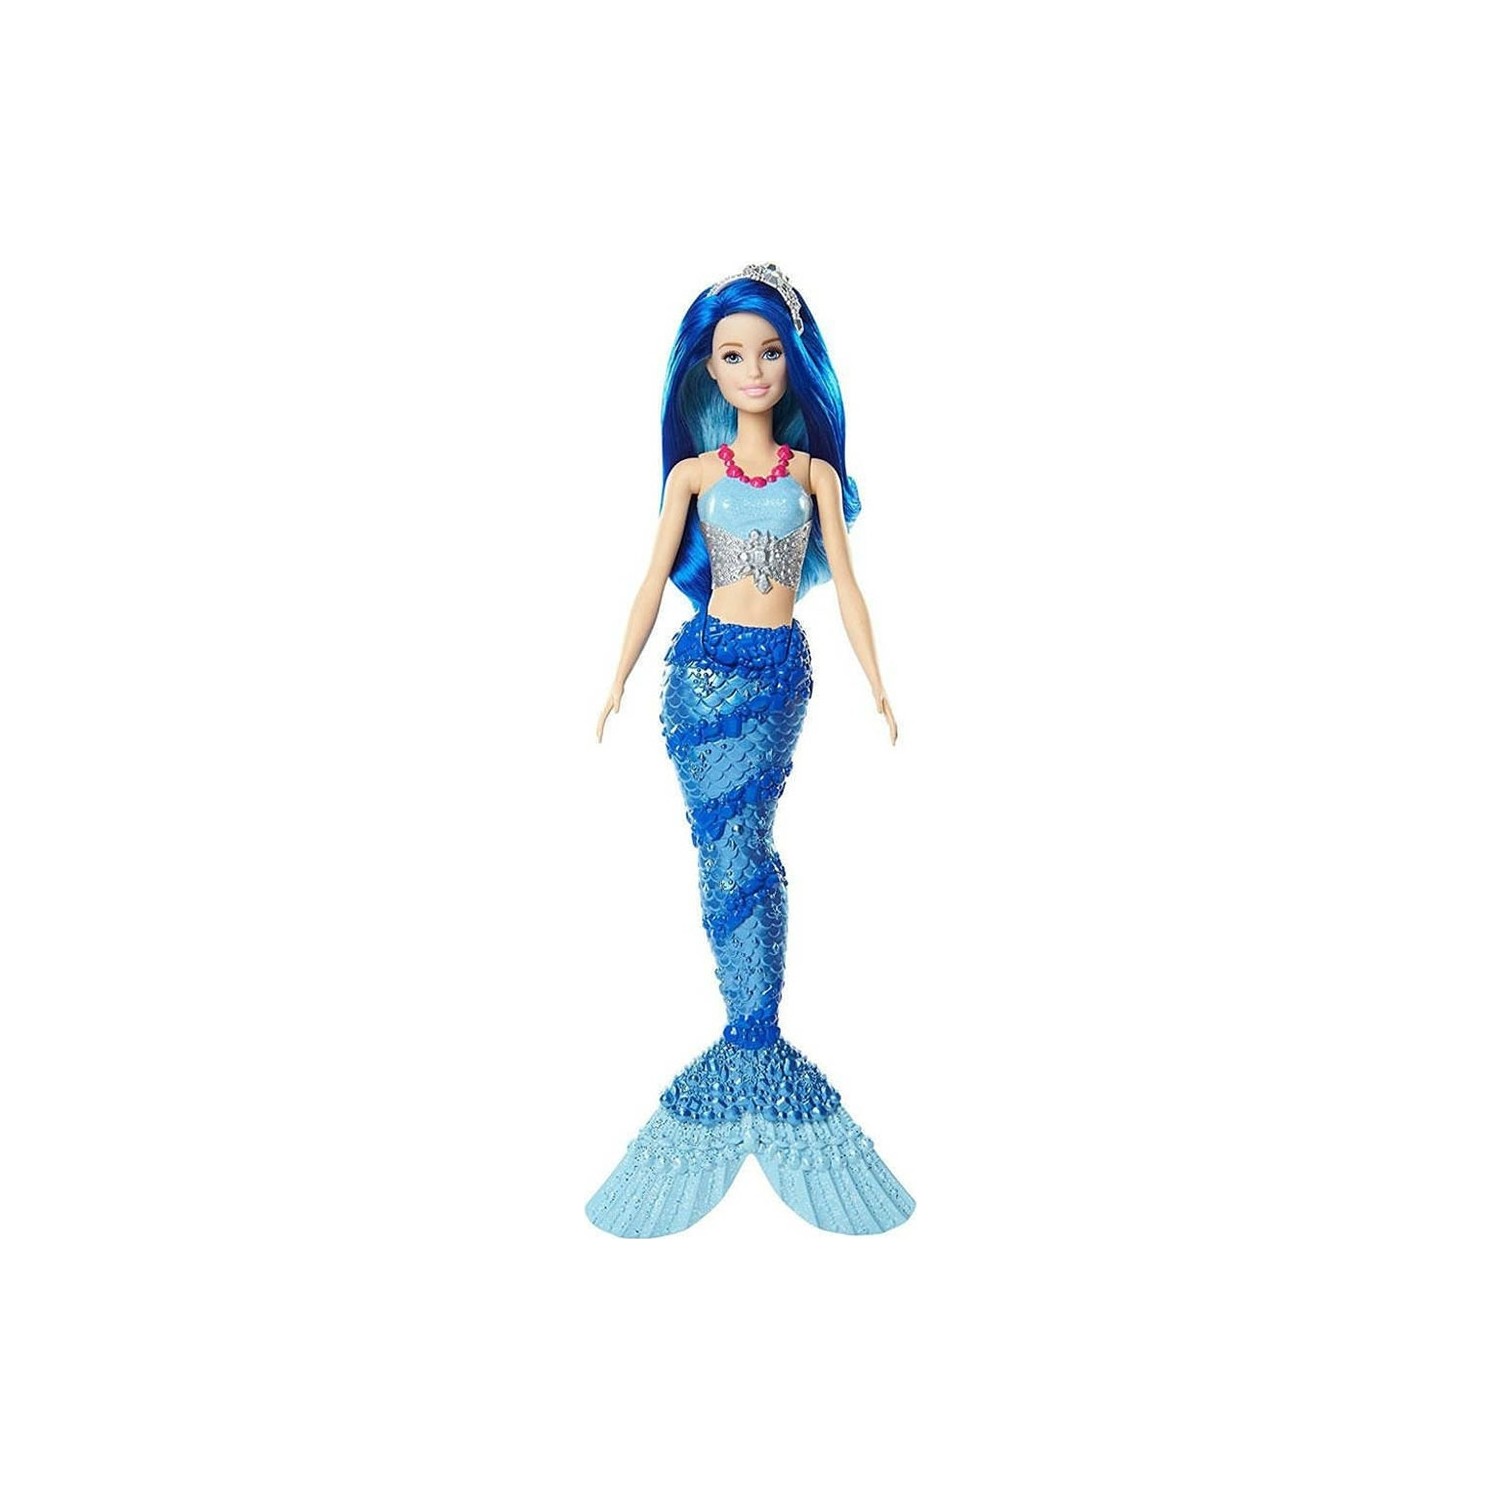 Кукла Barbie Dreamtopia Mermaid FJC92 кукла barbie dreamtopia mermaid fjc92